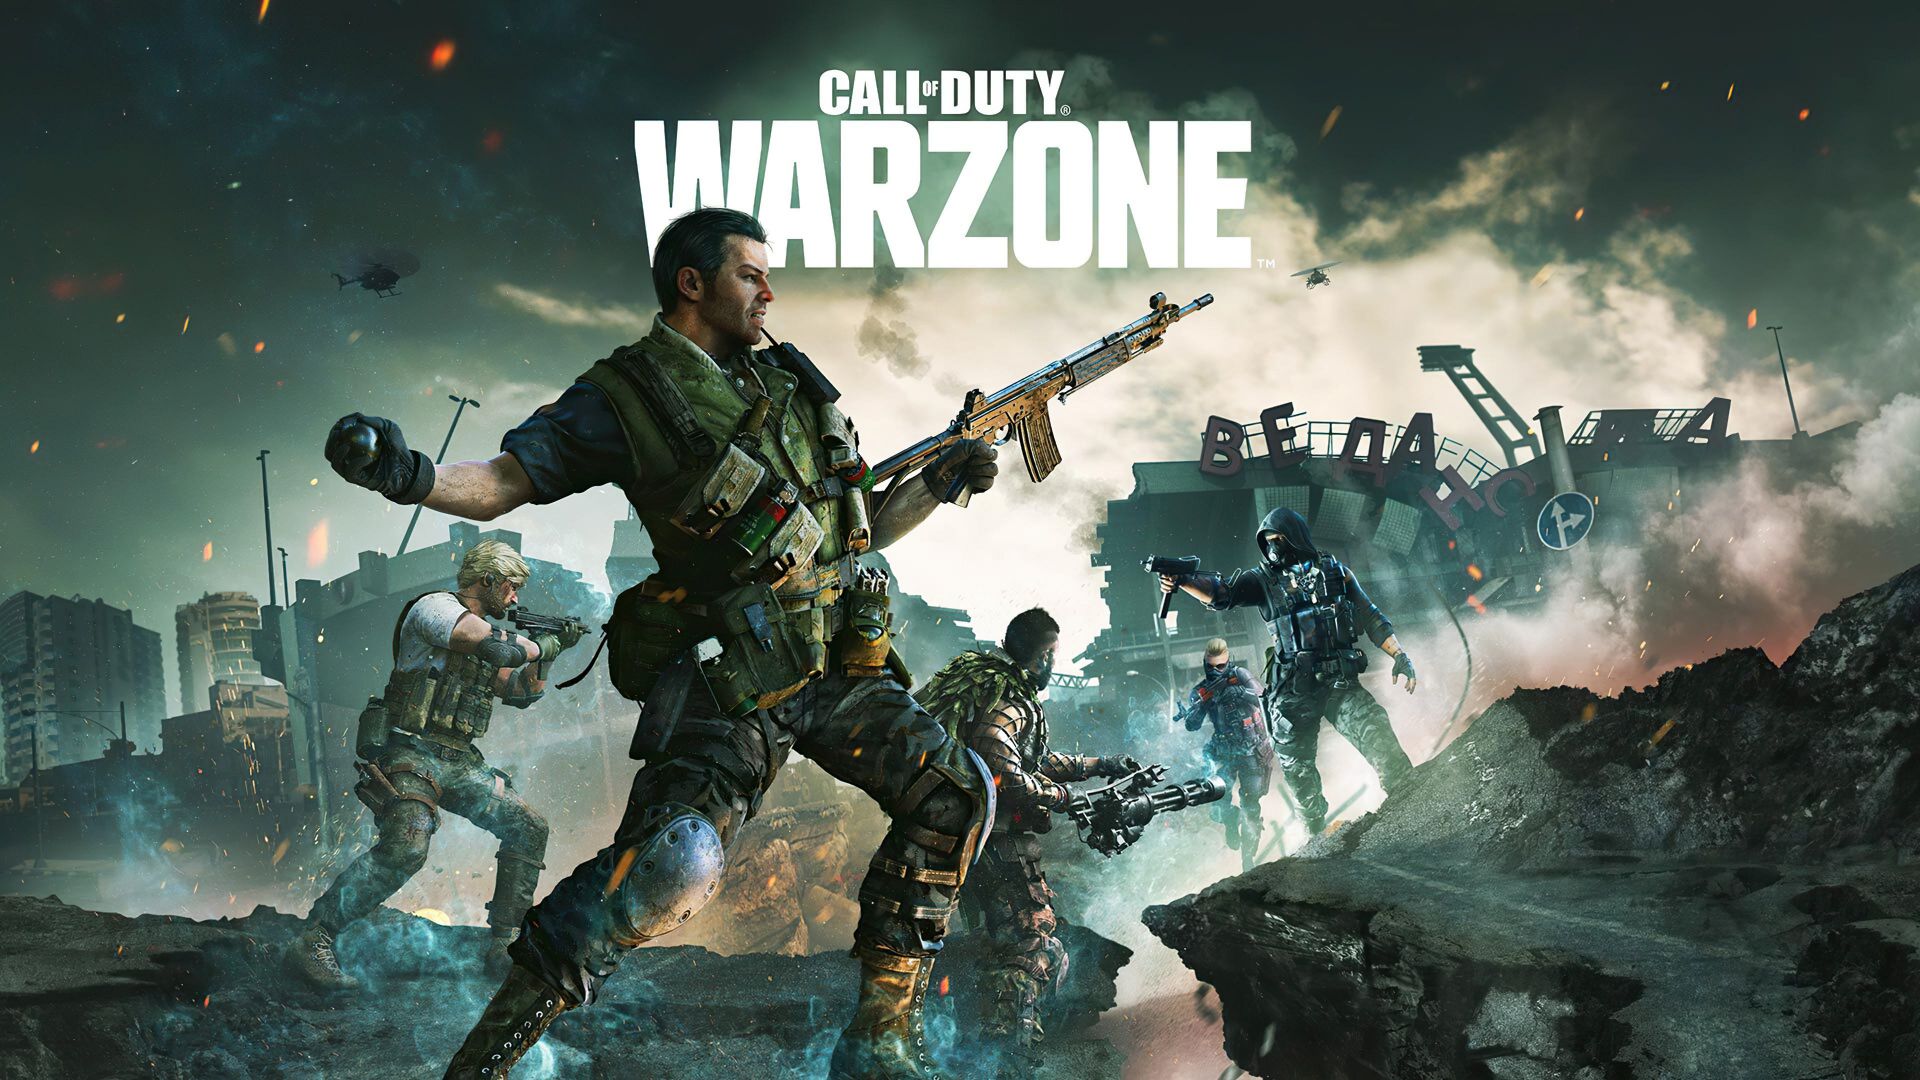 Warzone Mobile: ¿Dónde puedo descargar el juego de Call of Duty?